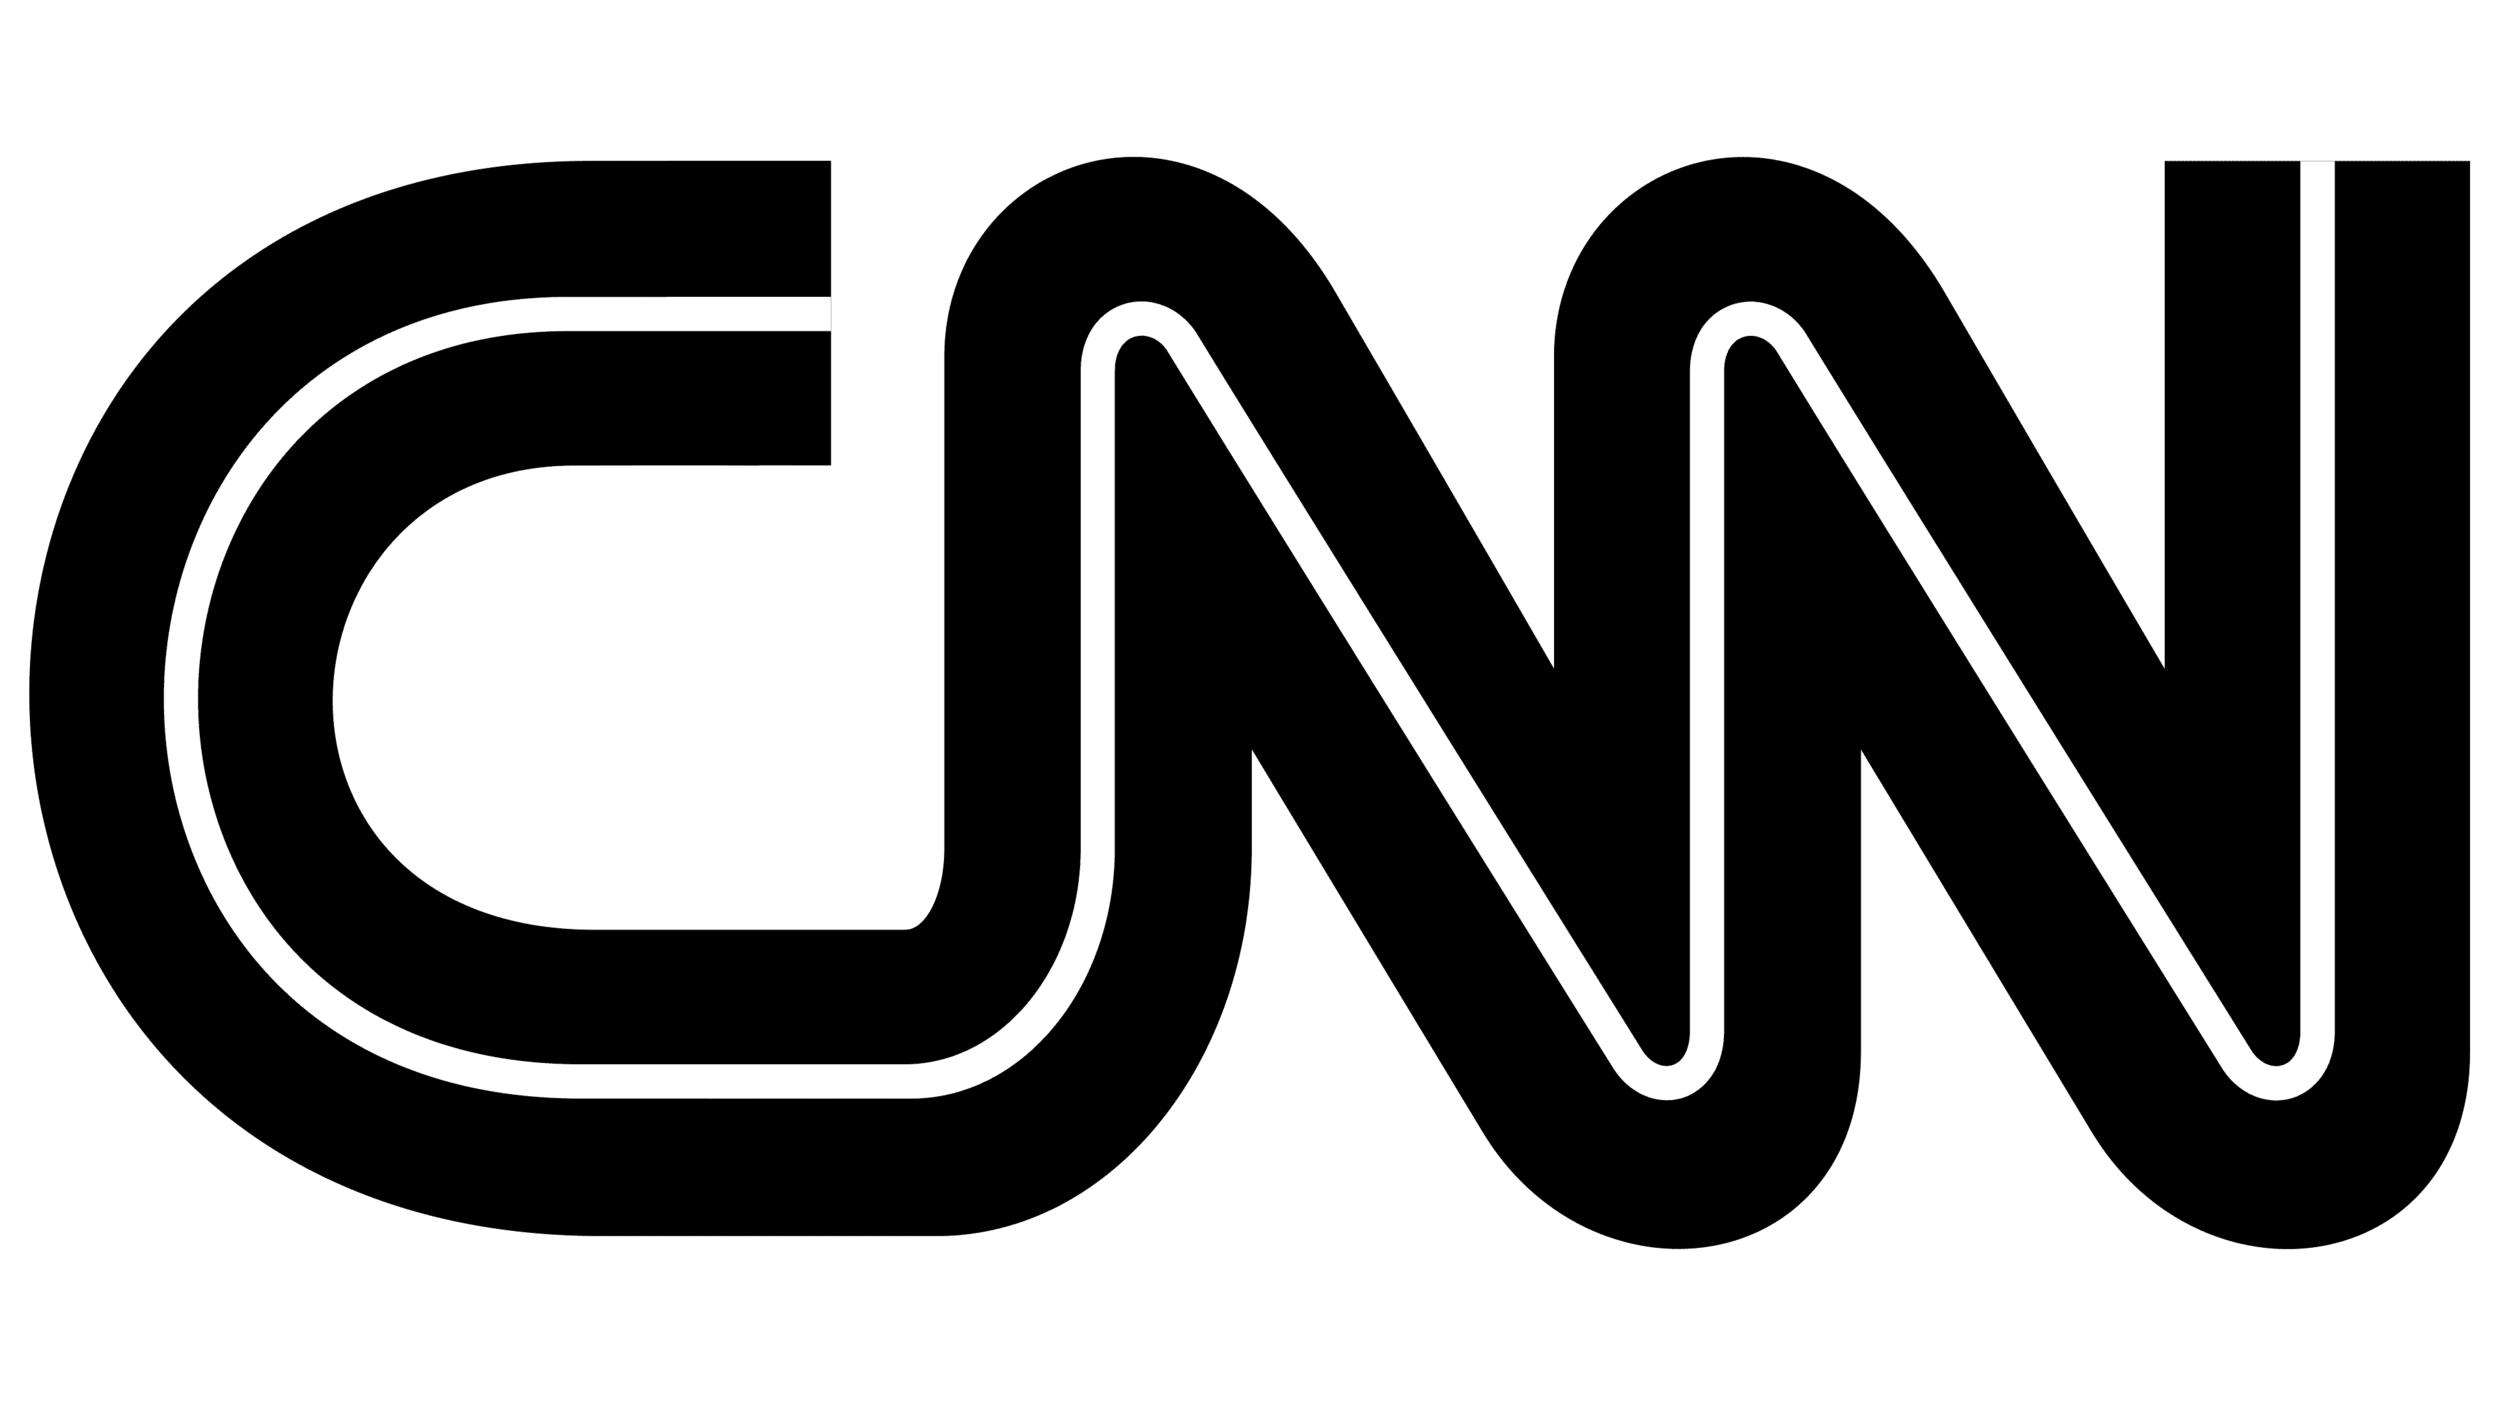 CNN-Logo-1980.png